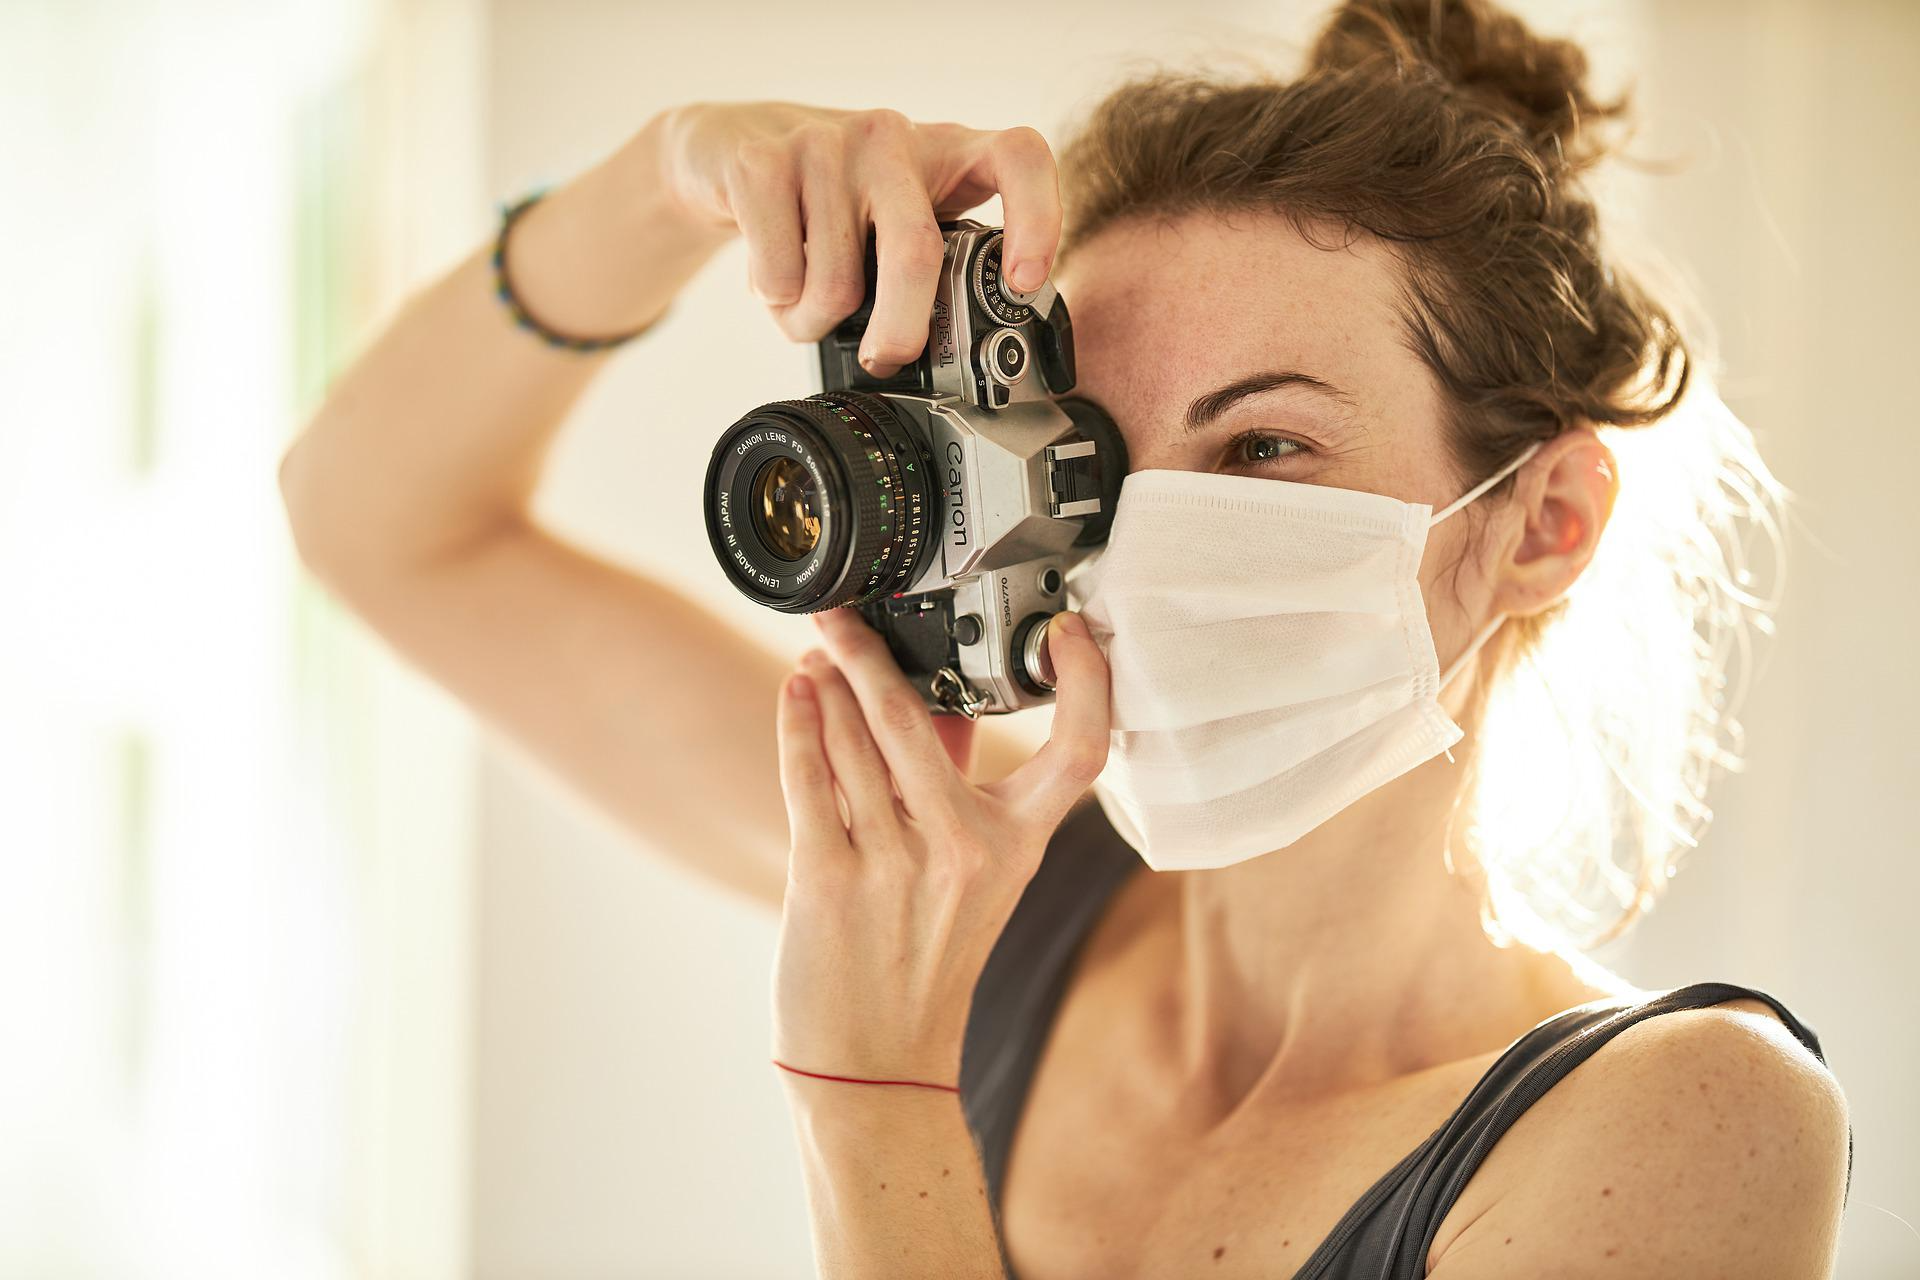 검은회색 나시를 입고 마스크를 쓴 상태로 카메라를 이용해 사진을 찍고있는 여성 